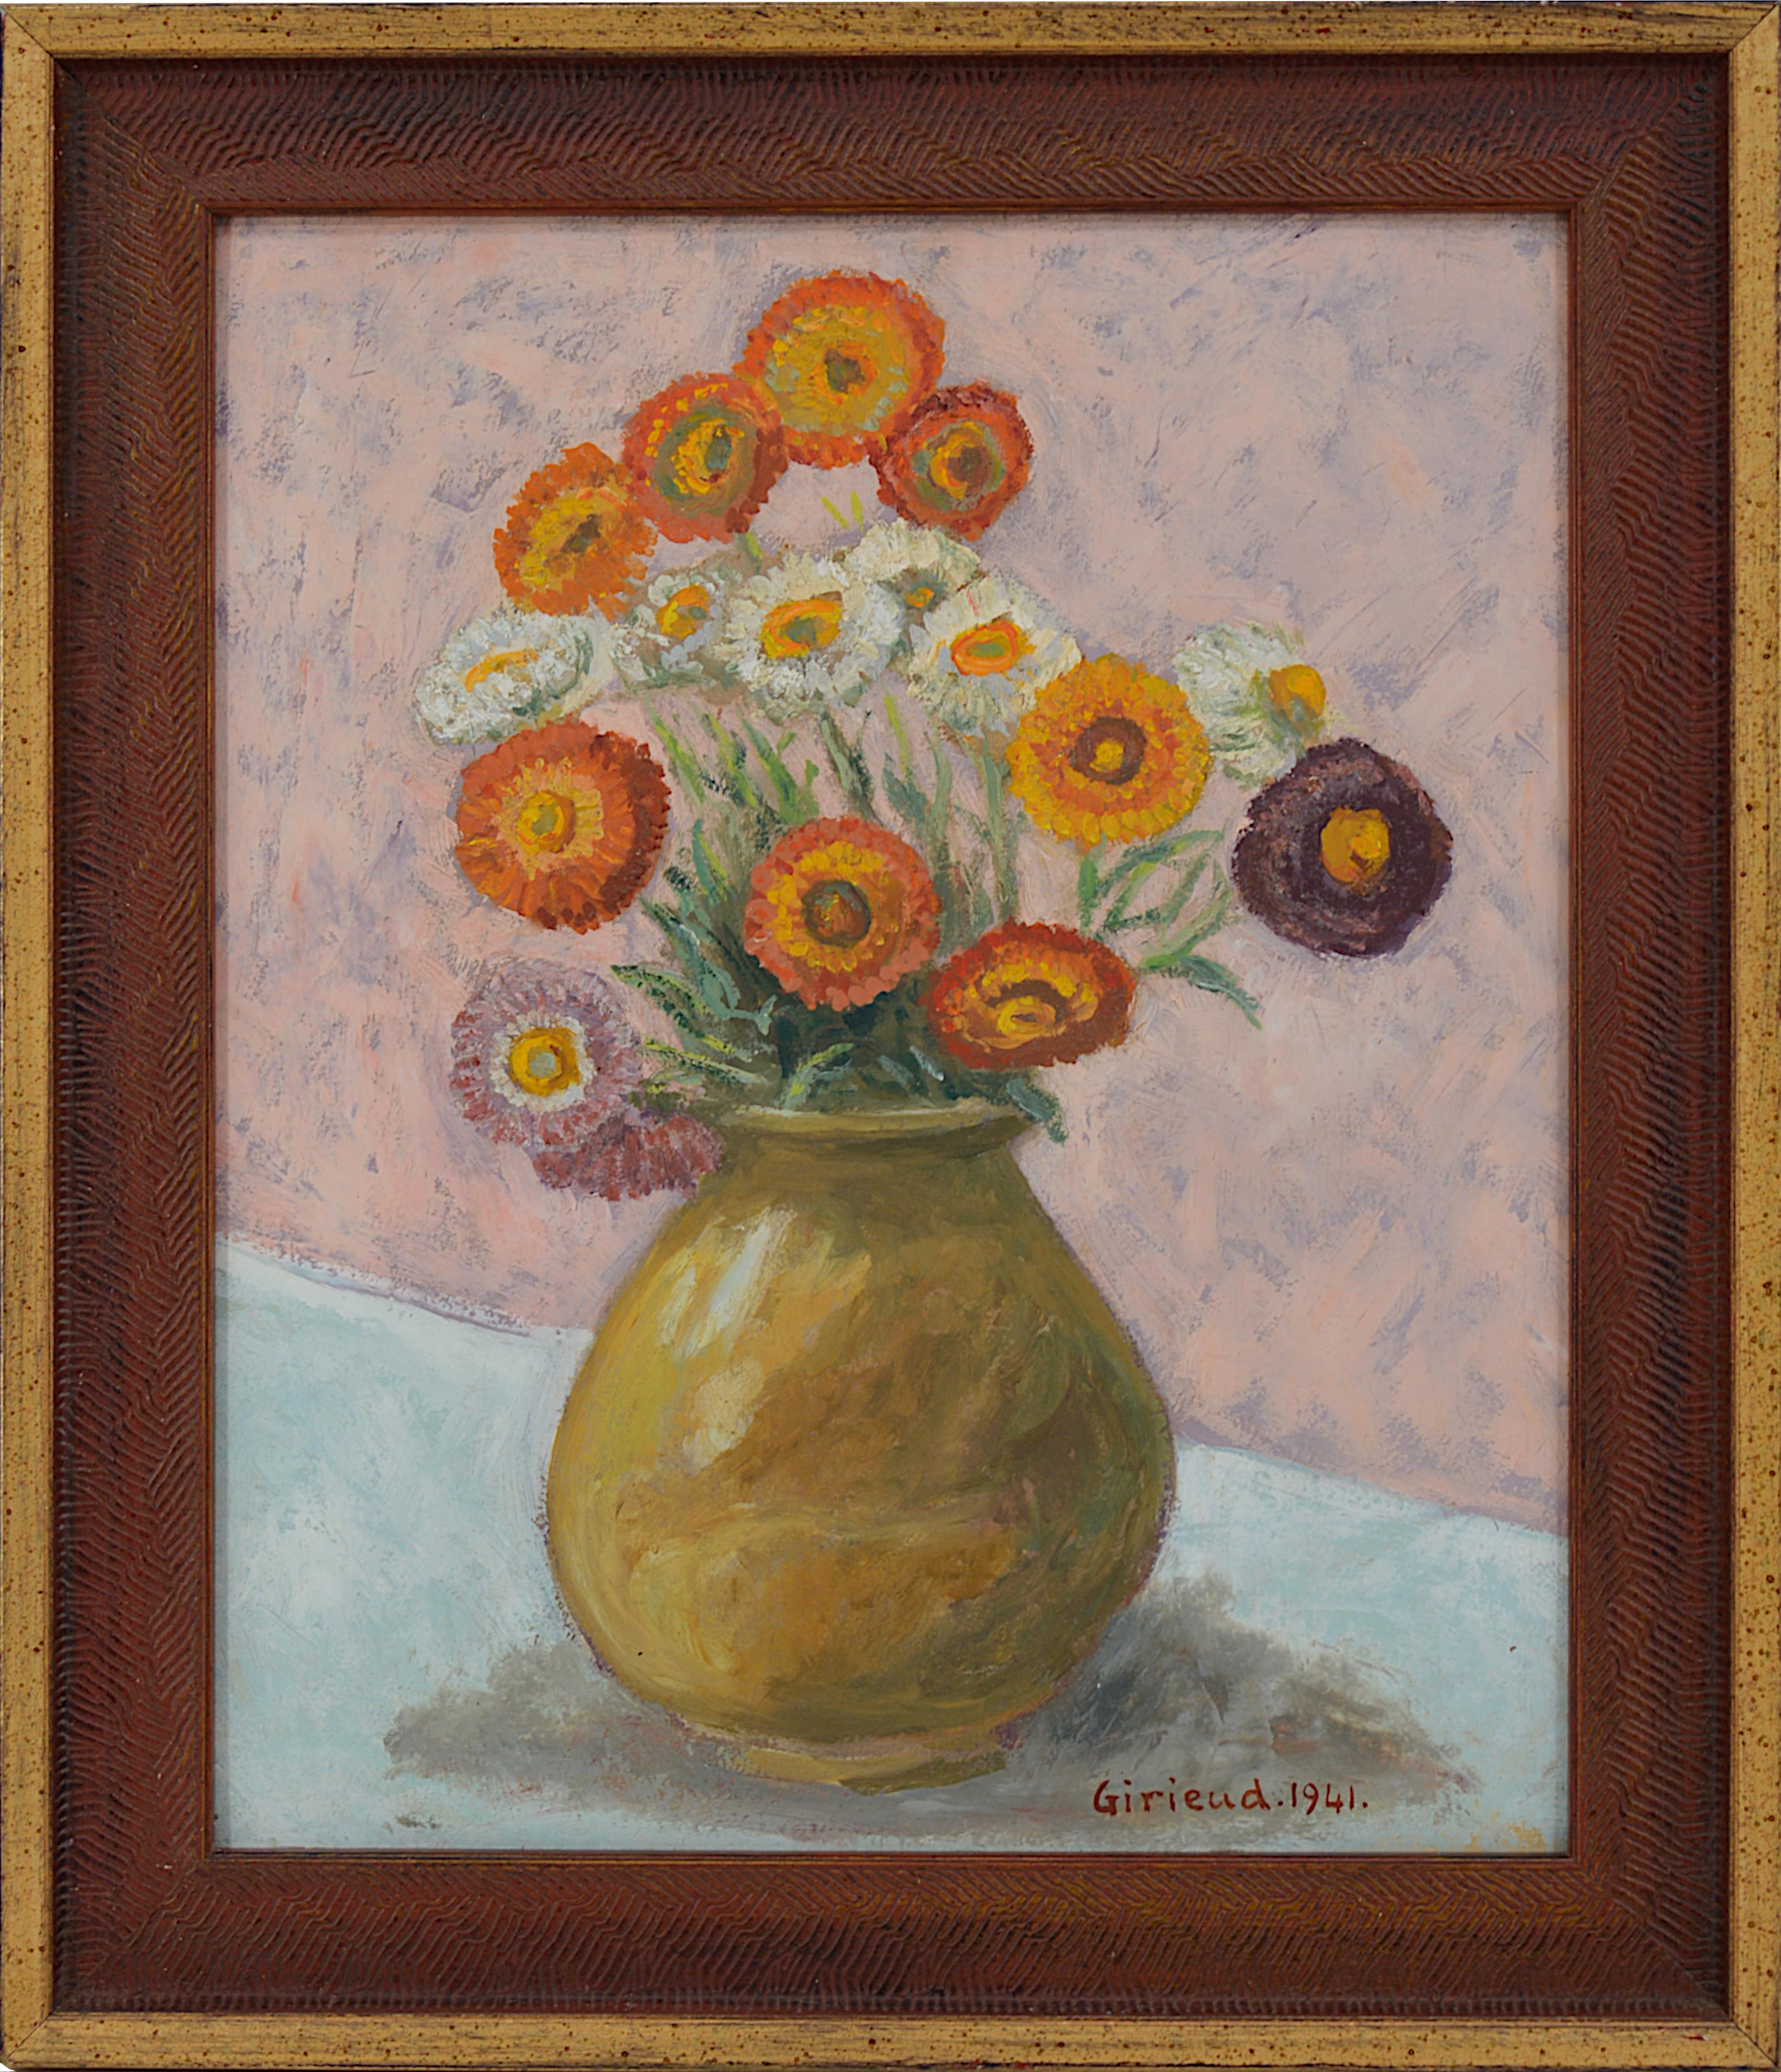 Pierre Girieud Figurative Painting - Pierre GIRIEUD, Vase of Flowers, Marigolds, Oil on Cardboard, 1941